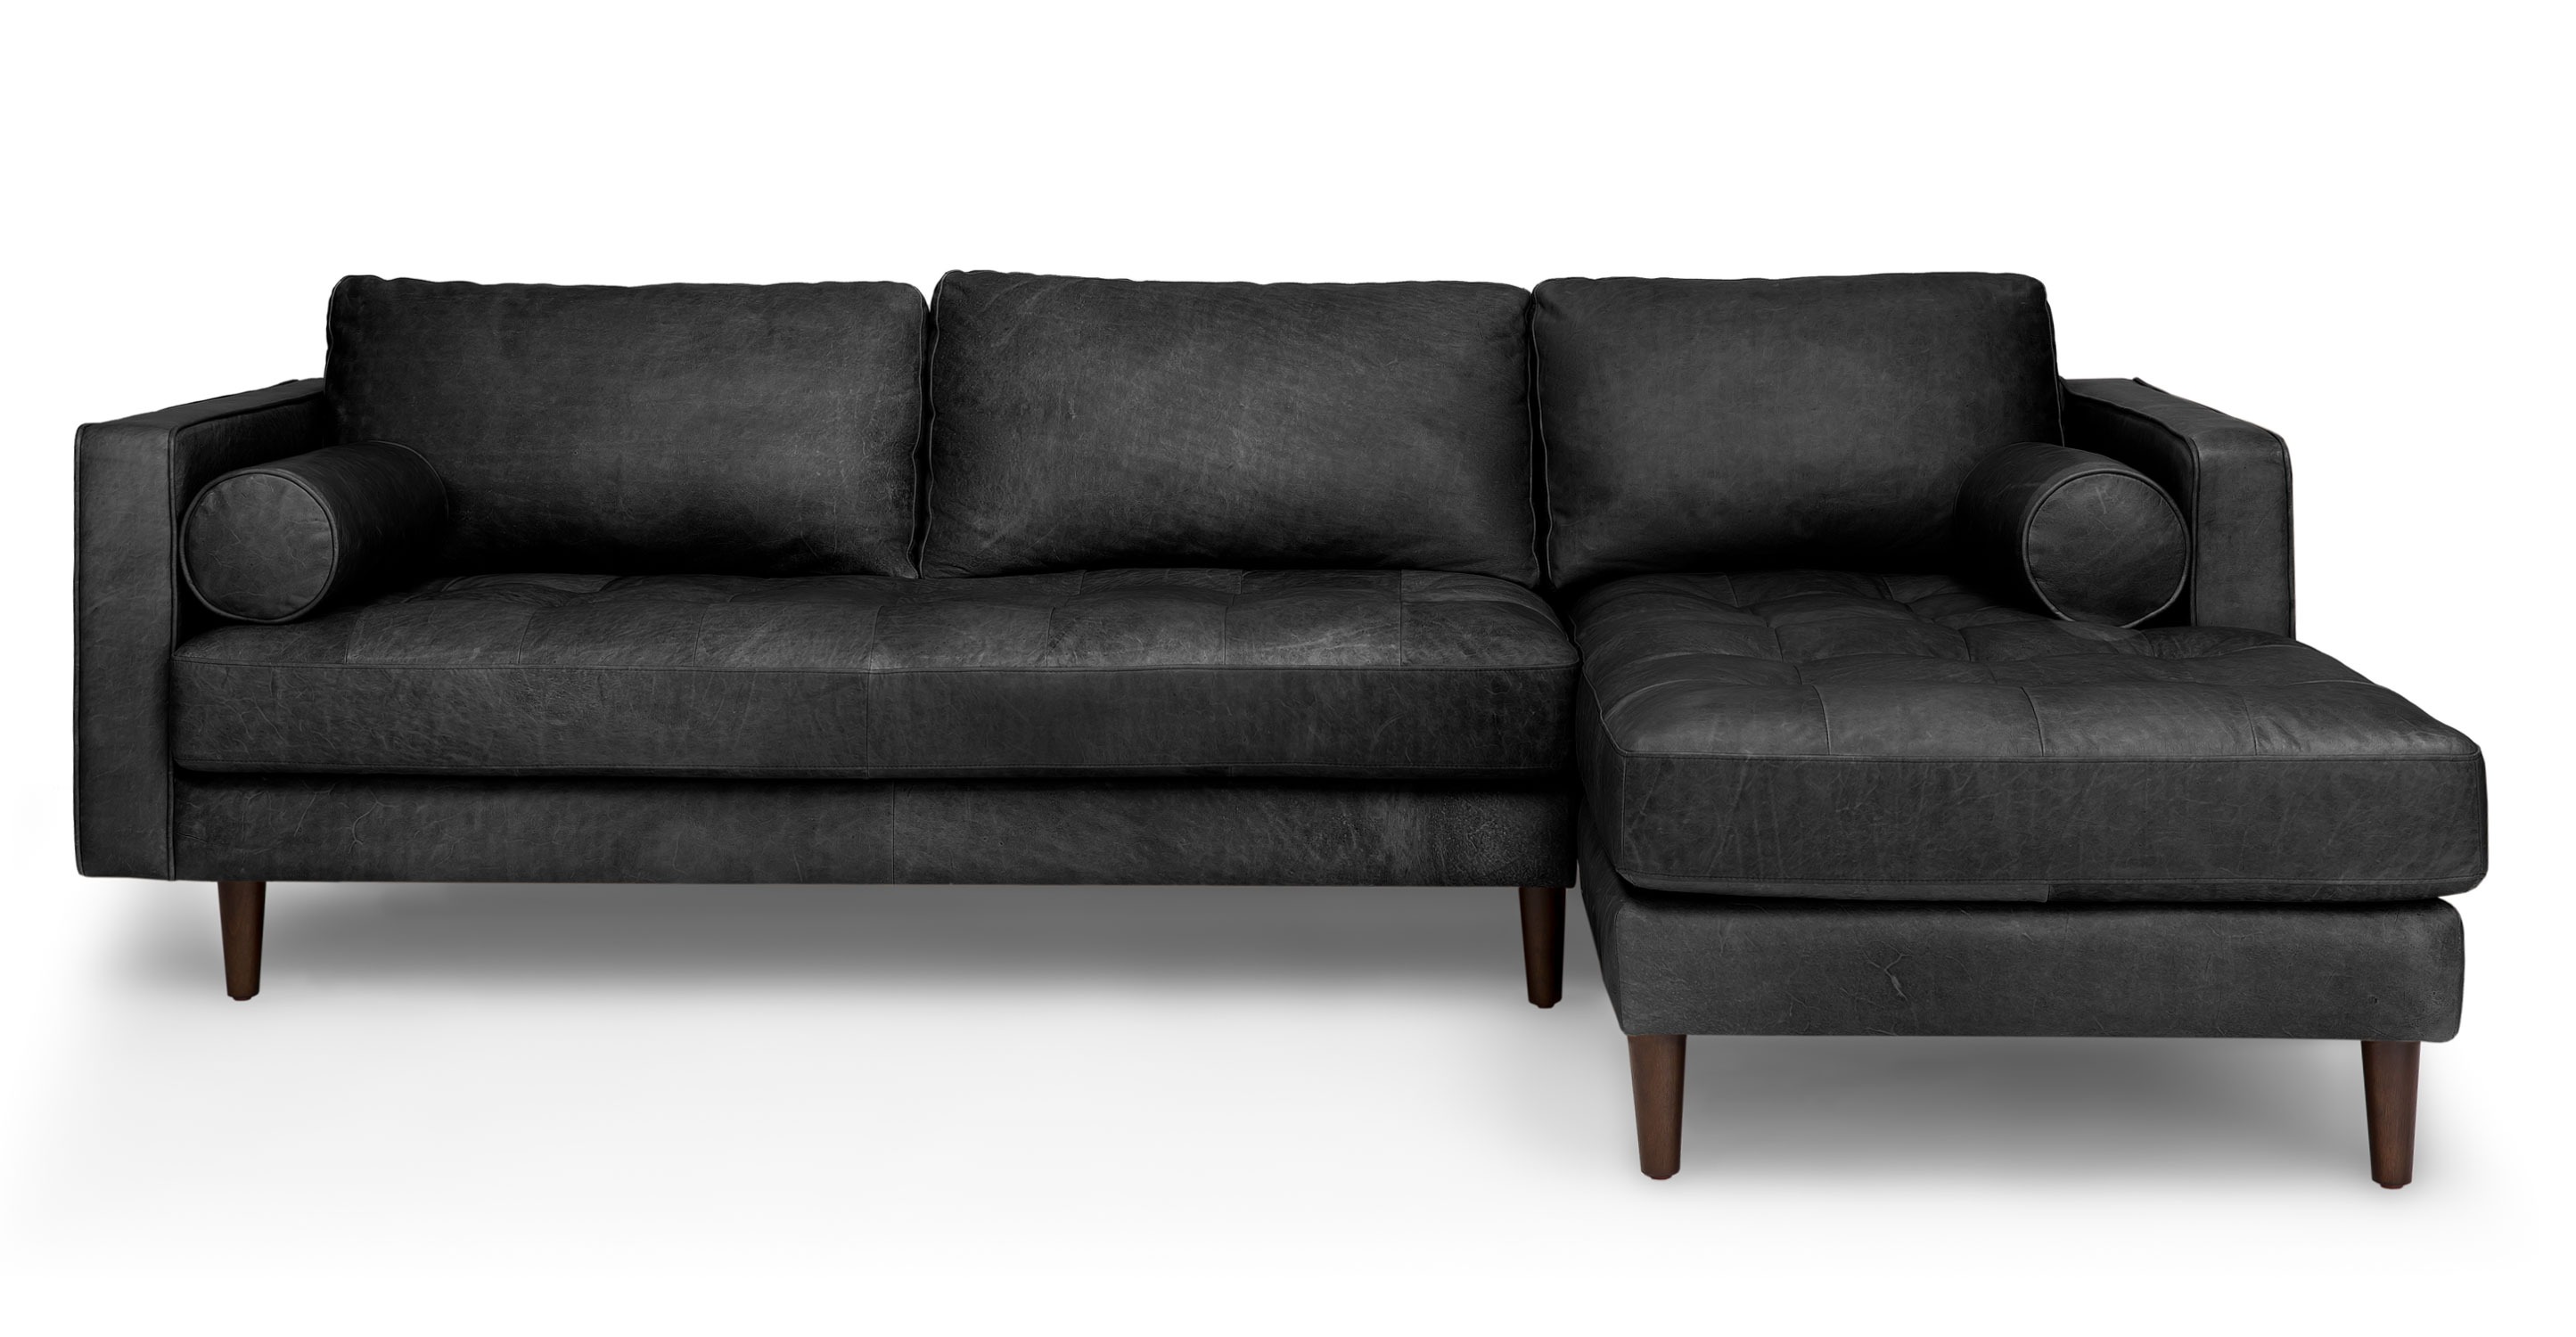 Những Điều Thú Vị Có Thể Bạn Chưa Biết Về Ghế Sofa Màu Đen Đẹp Và Rẻ